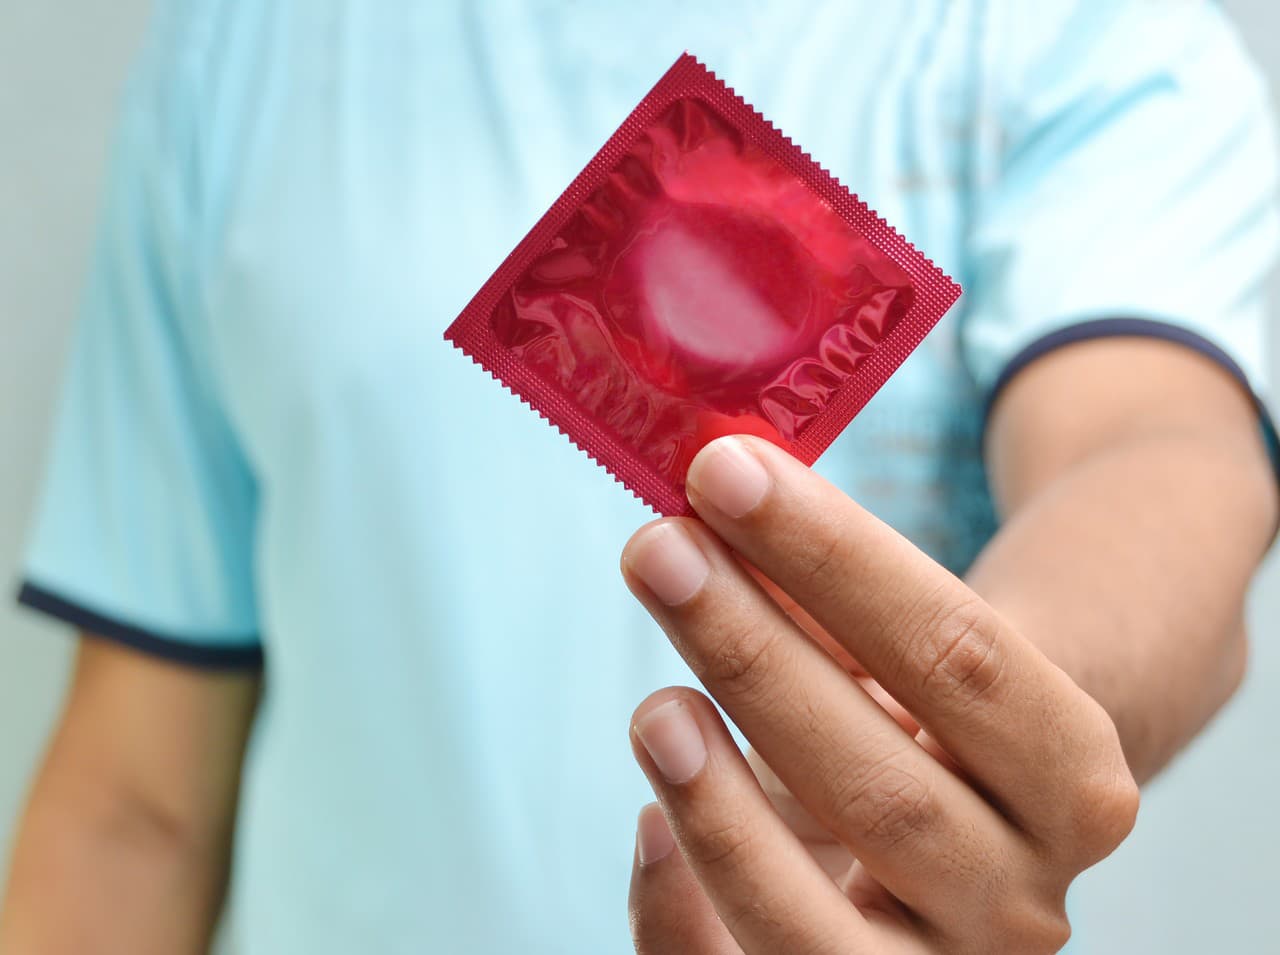 Je kondóm skutočne spoľahlivý?